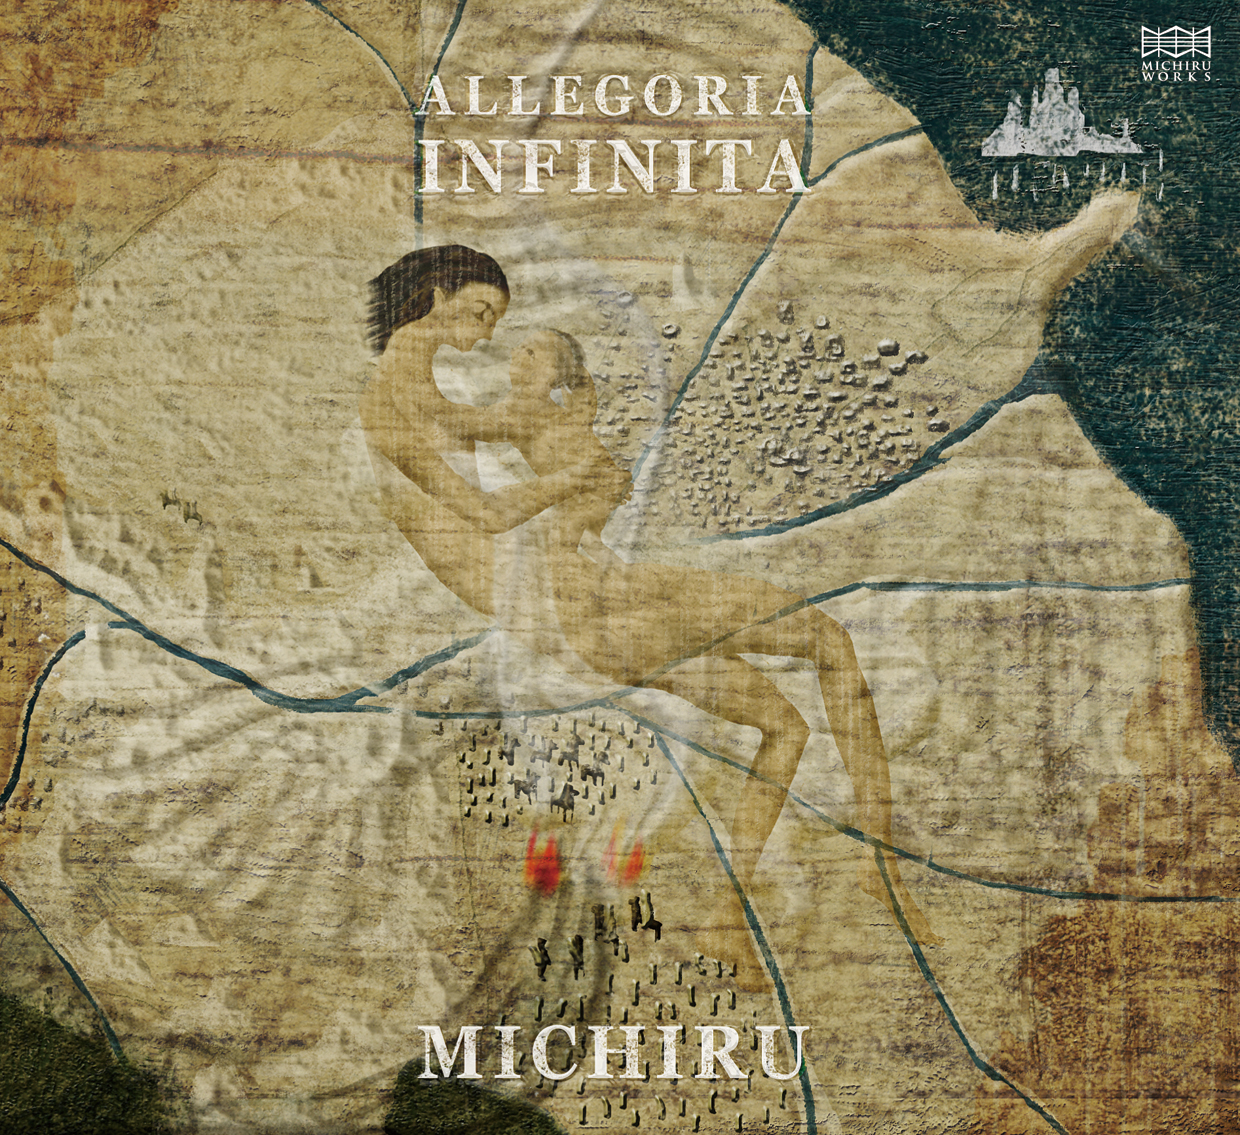 2nd Album  “ALLEGORIA INFINITA”